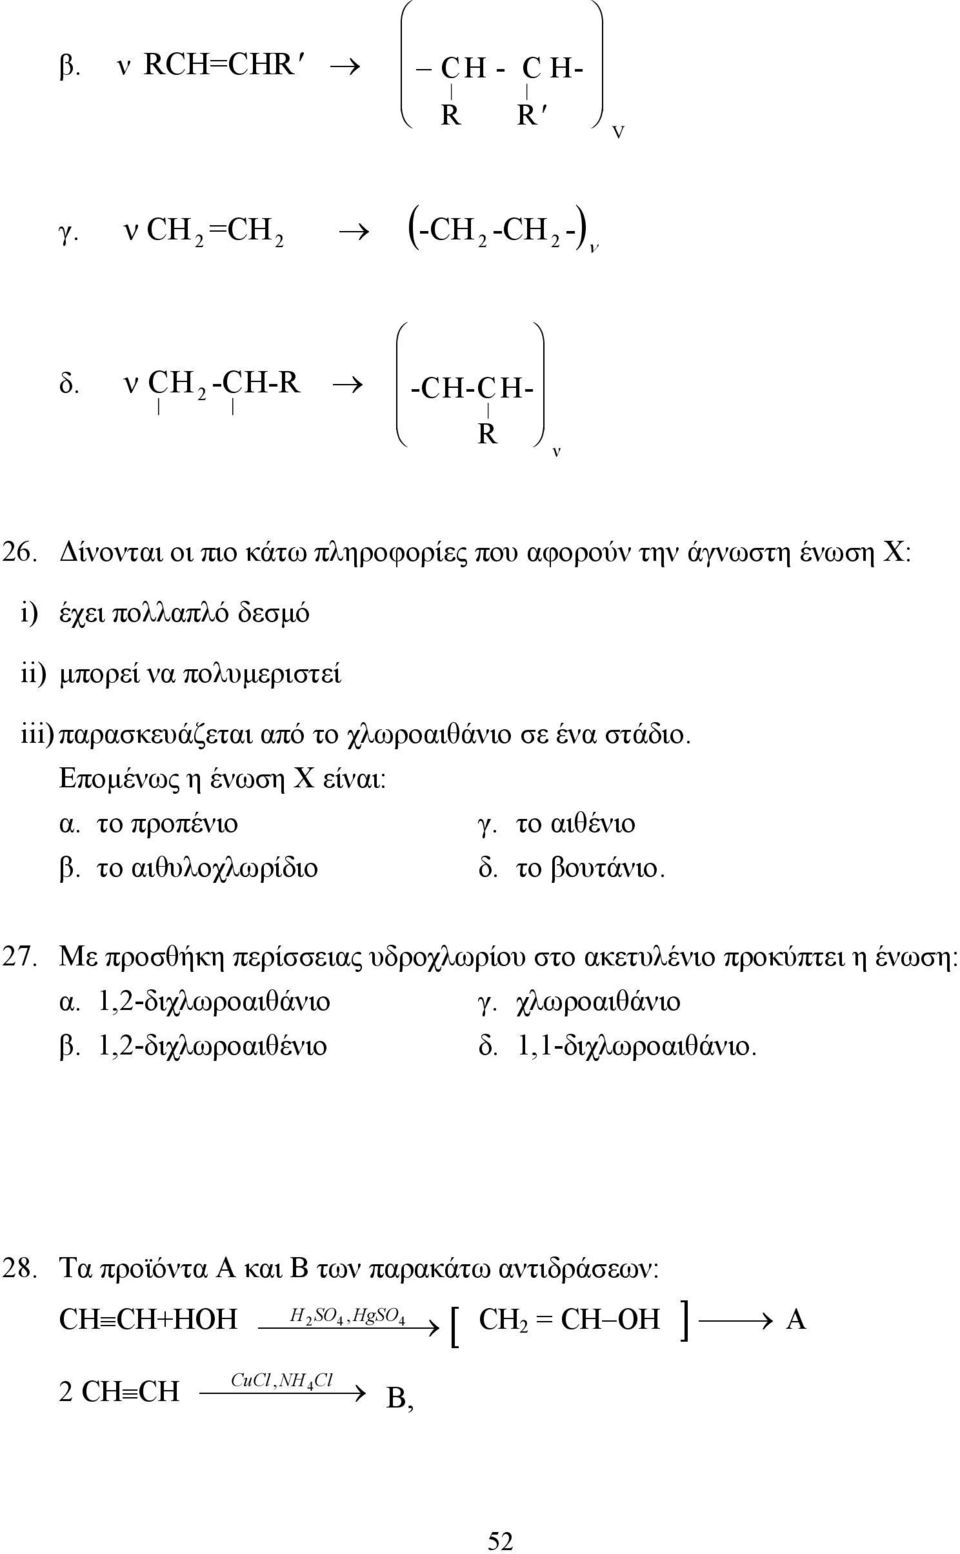 ένα στάδιο. Εποµένως η ένωση Χ είναι: α. το προπένιο γ. το αιθένιο β. το αιθυλοχλωρίδιο δ. το βουτάνιο. 27.